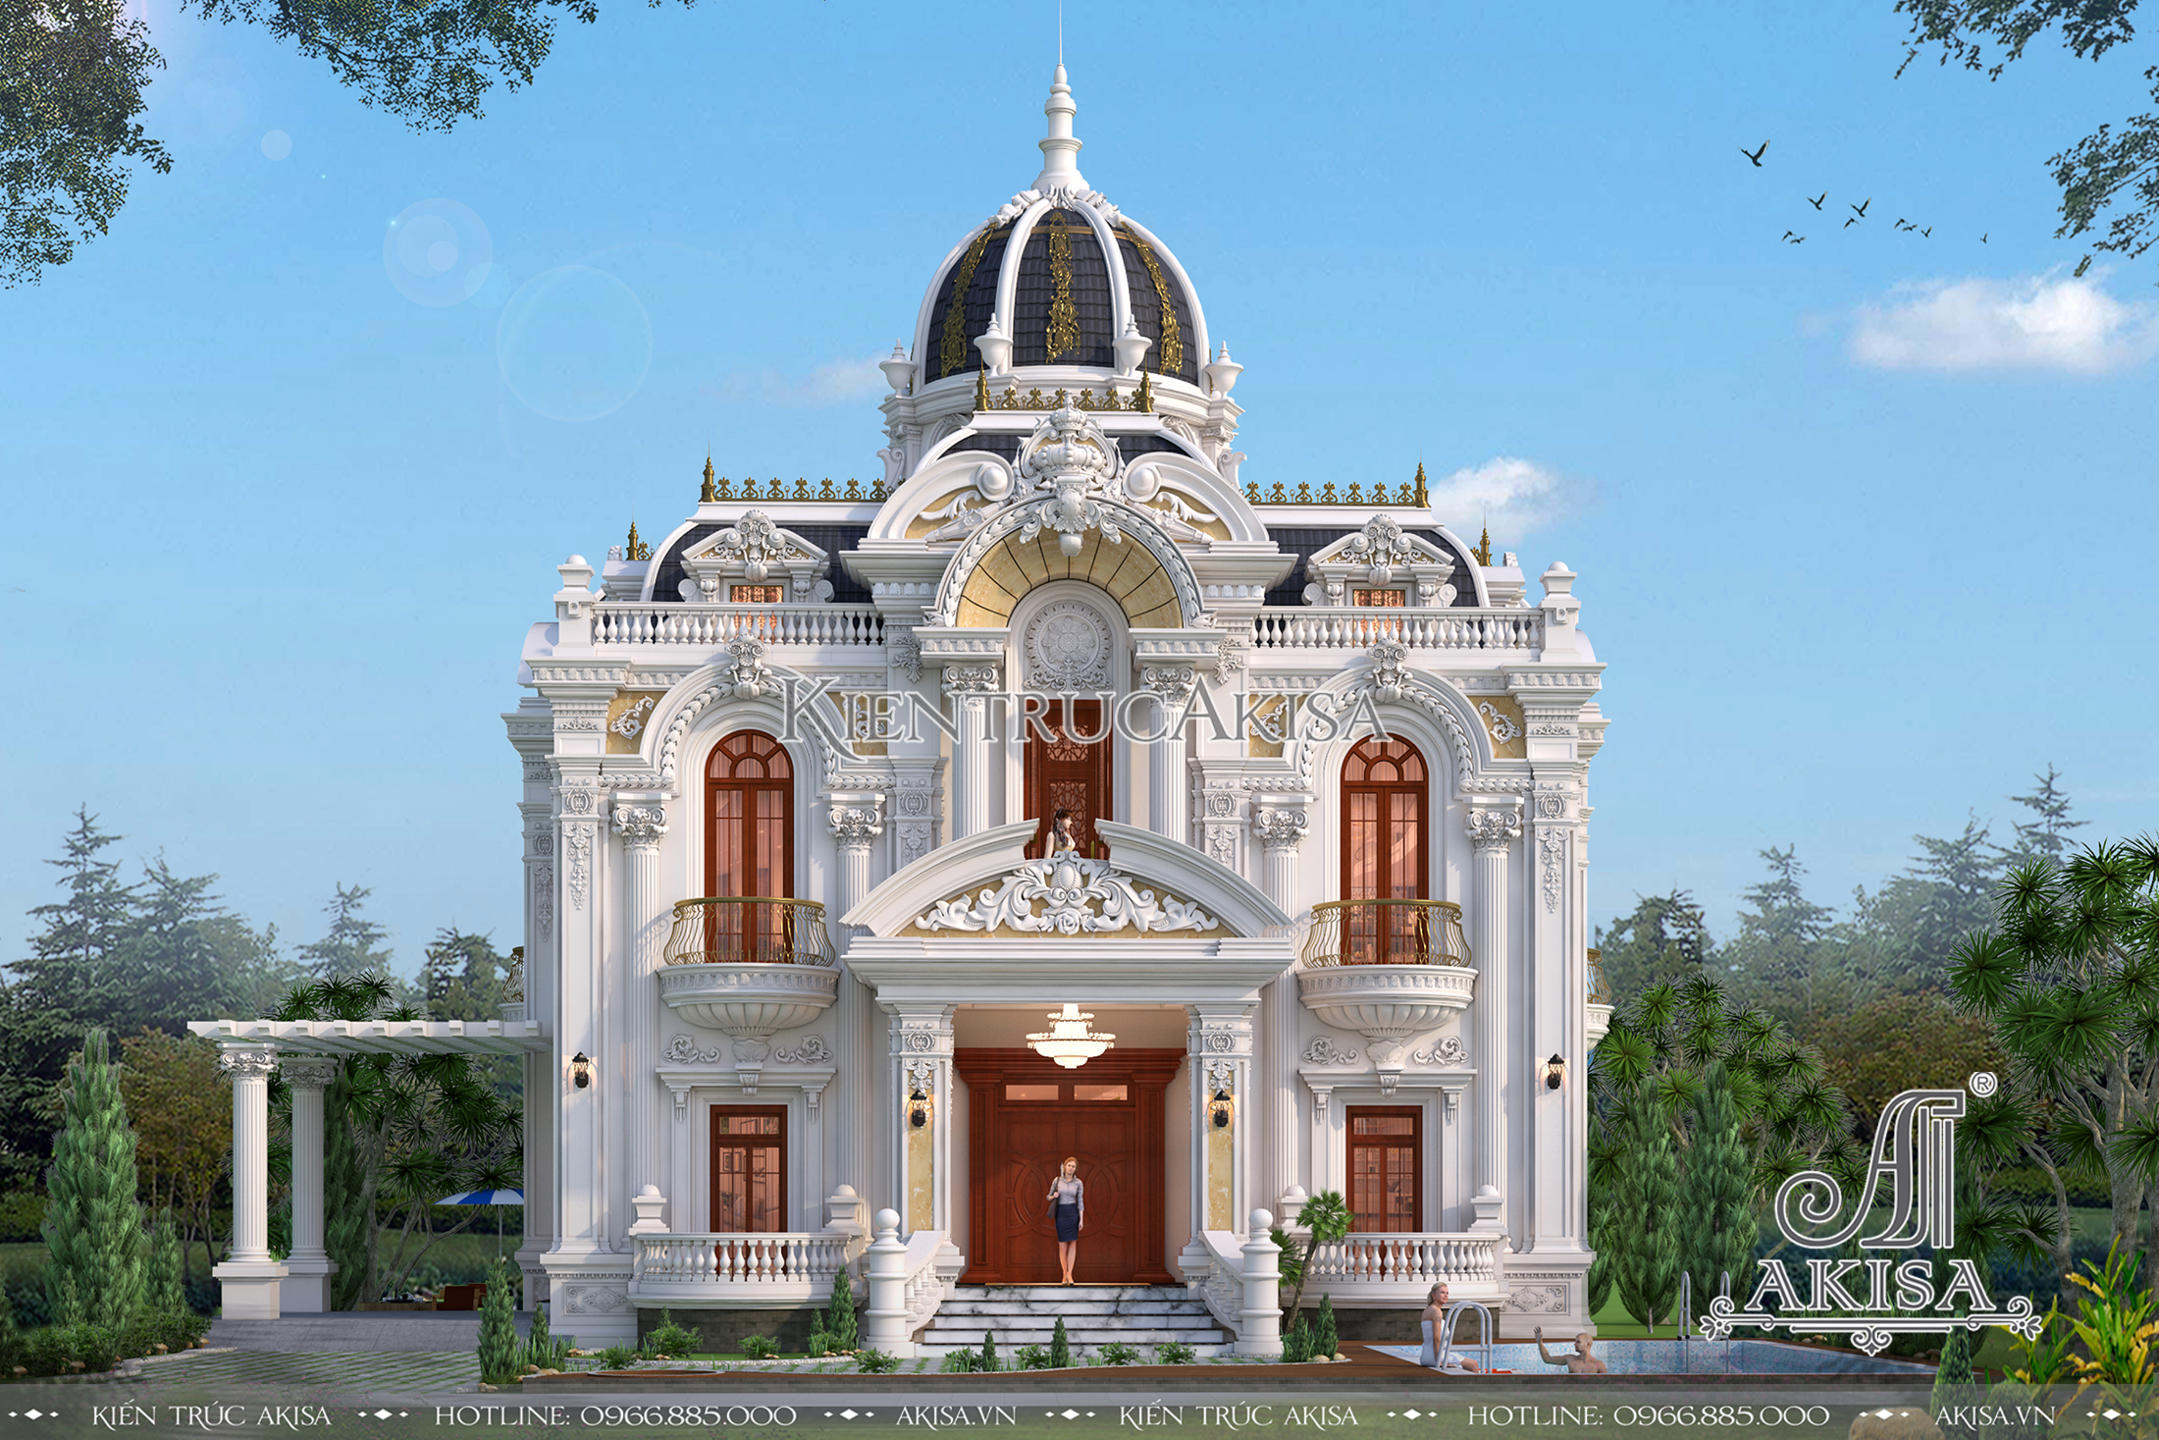 Mặt tiền biệt thự 2 tầng của gia đình ông Sinh được thiết kế tỉ mỉ, cầu kỳ mang đậm phong cách cổ điển Pháp